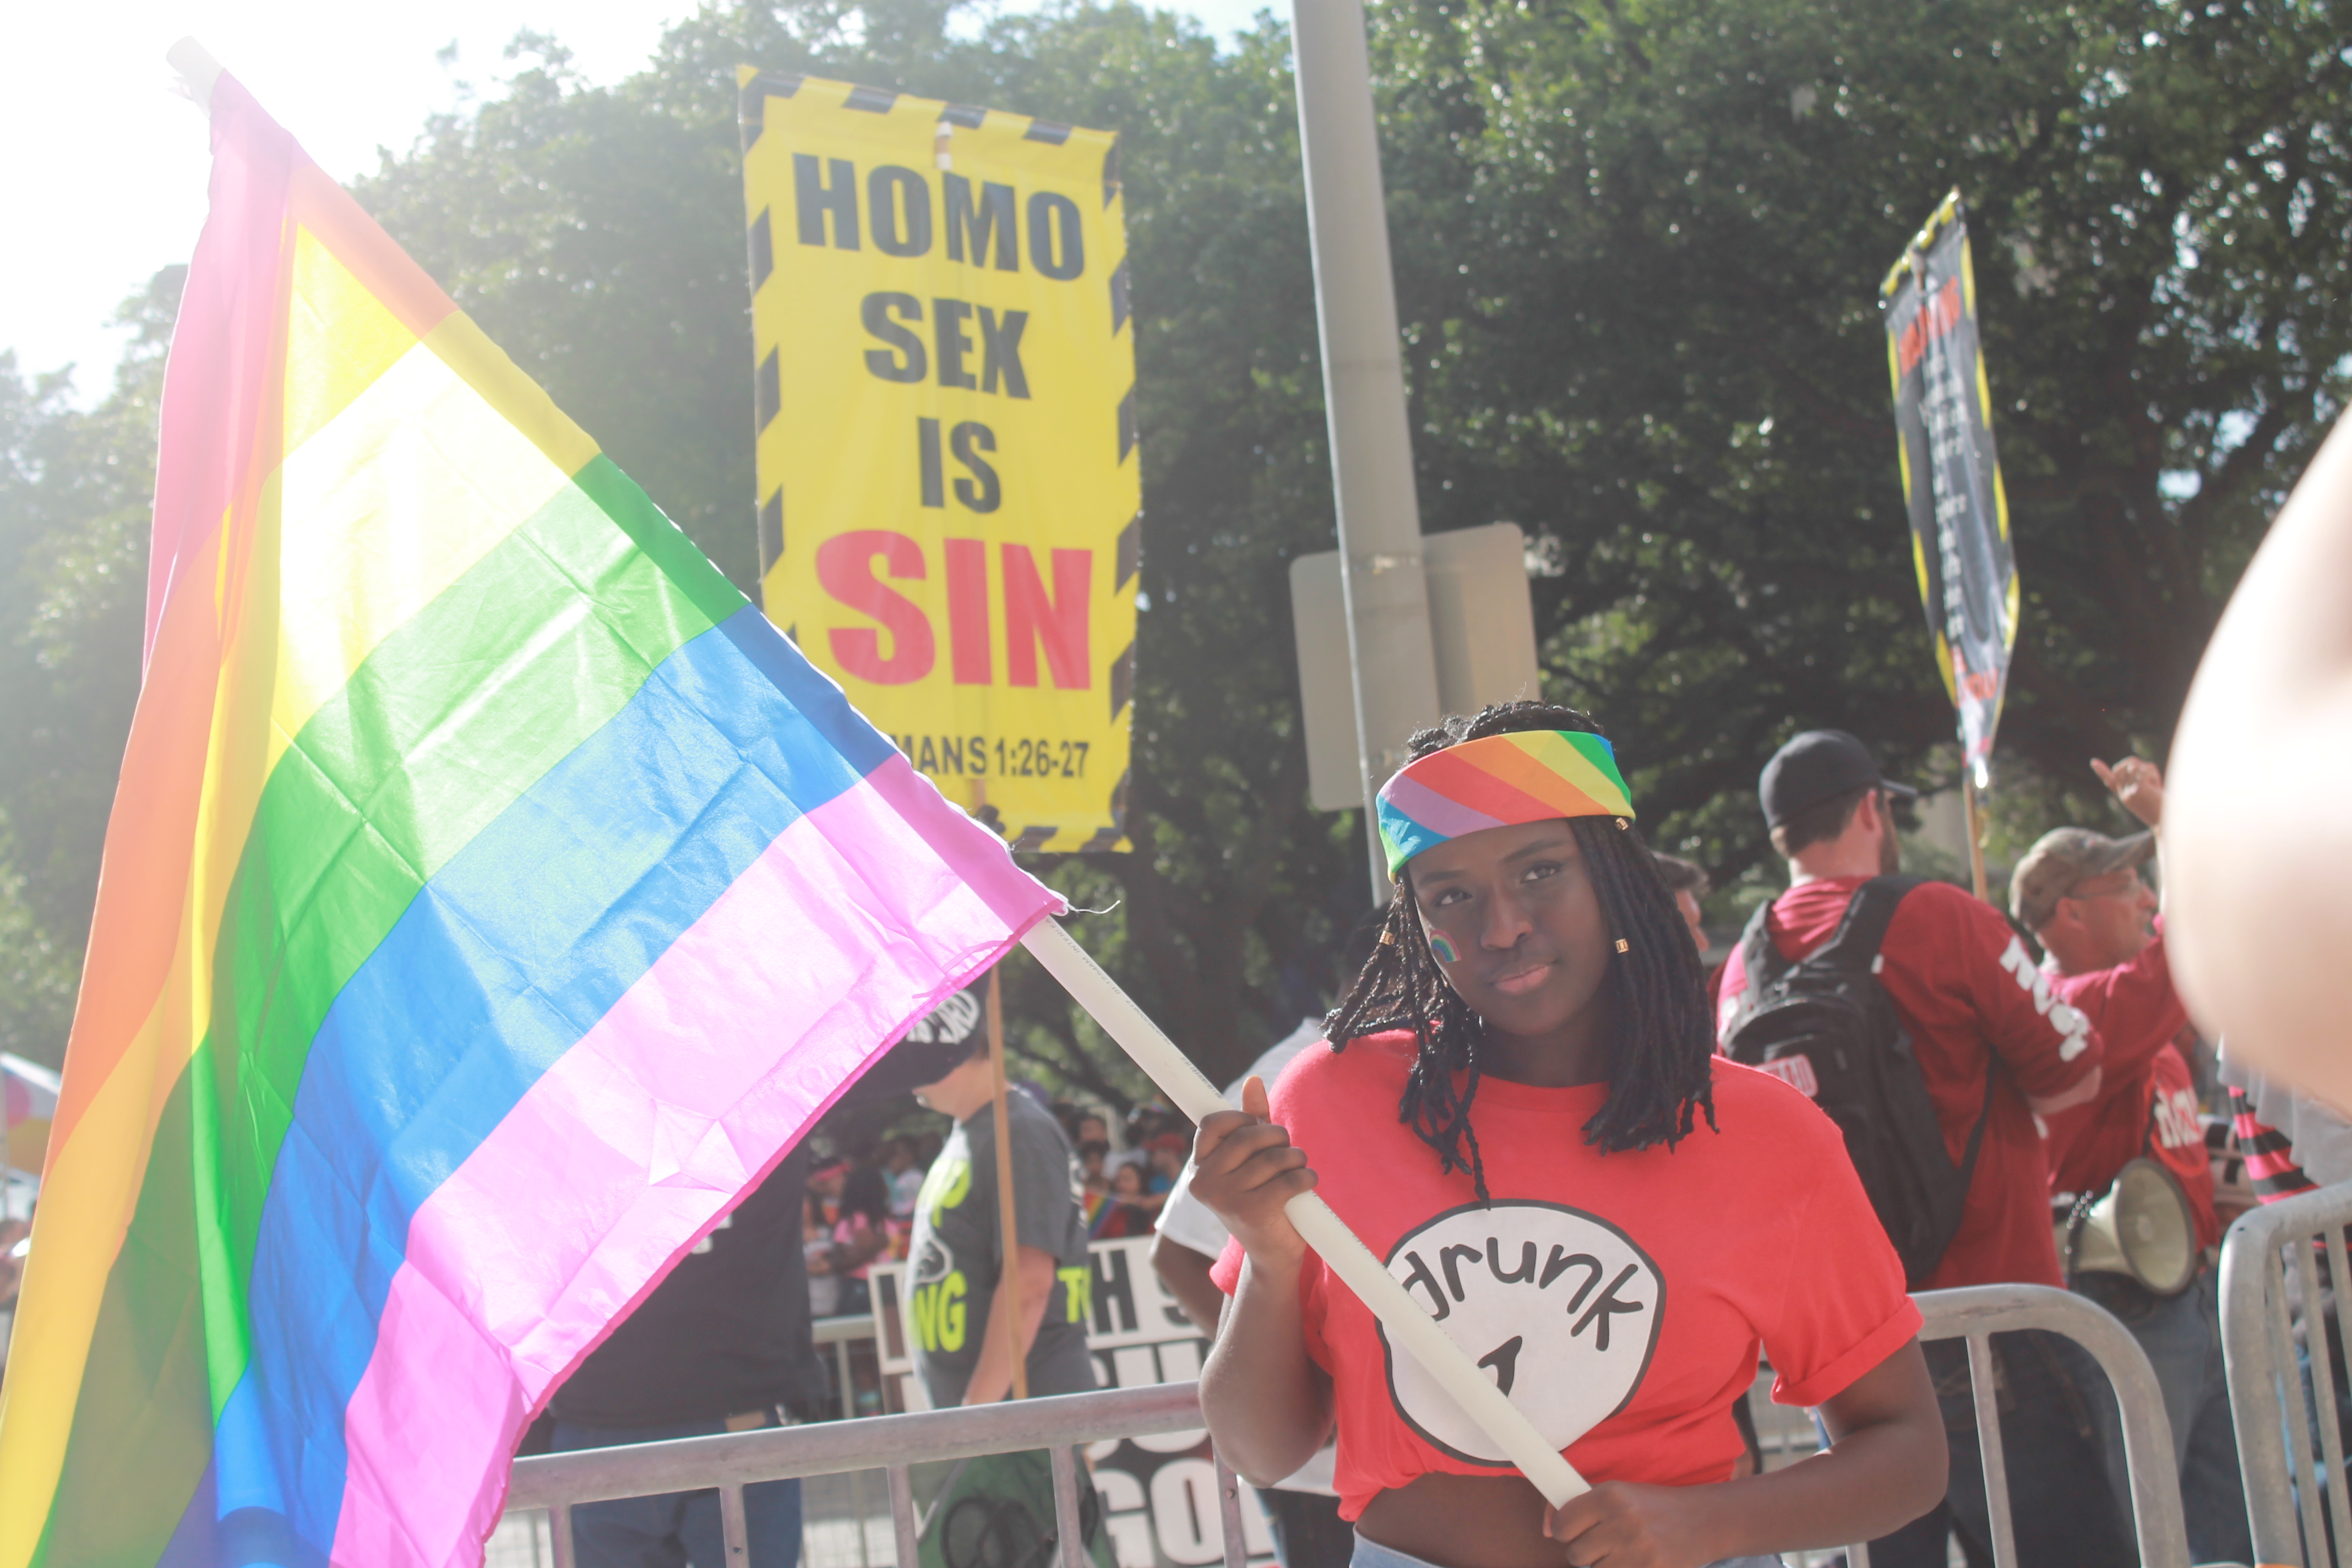 gay pride orlando 2015 festival